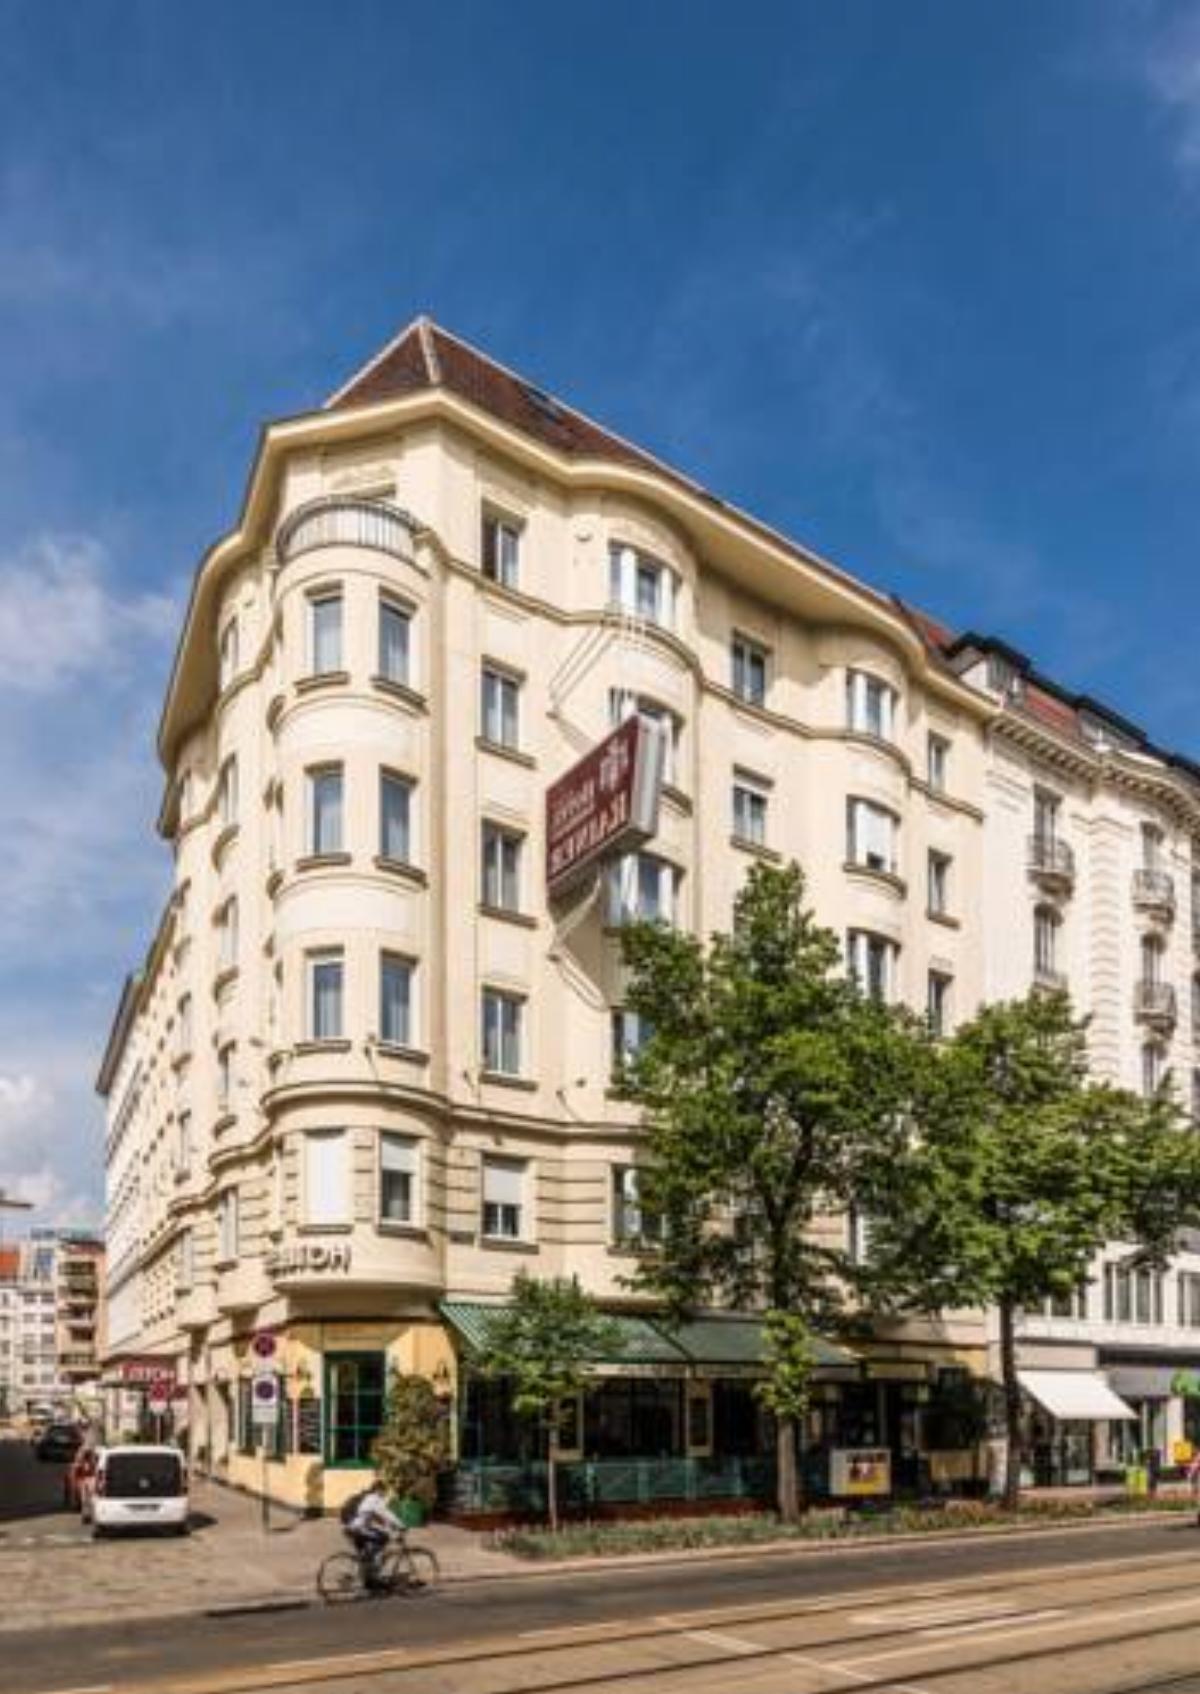 Hotel Erzherzog Rainer Hotel Wien Austria